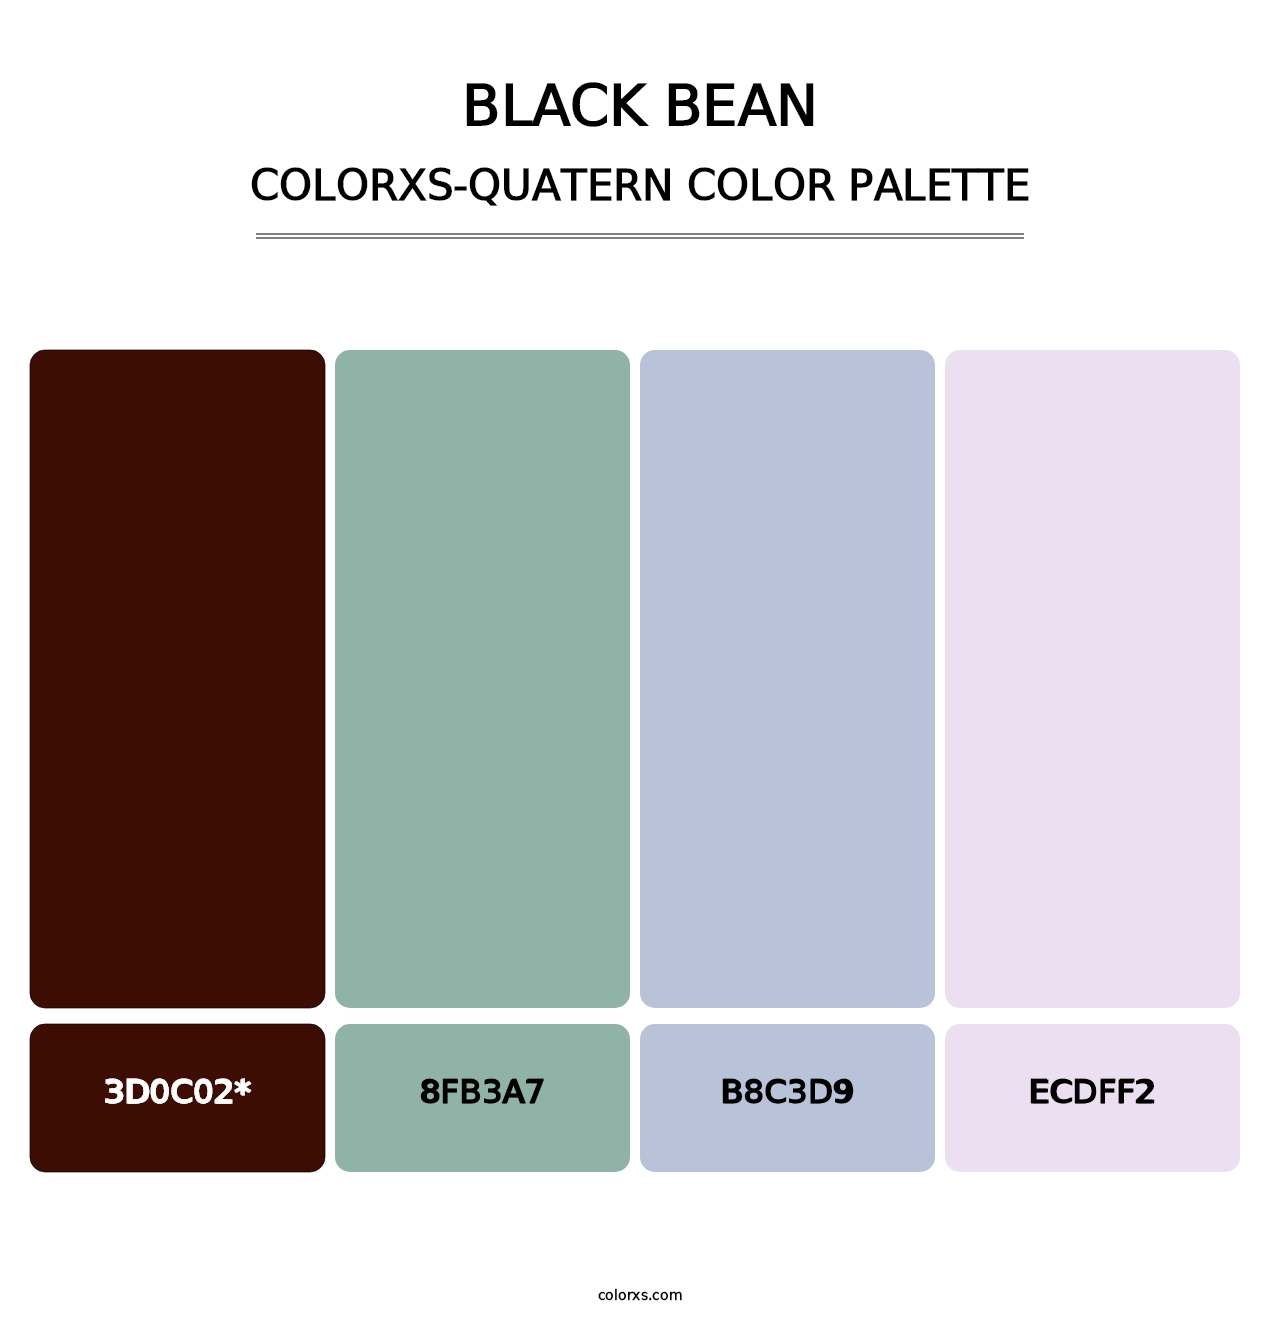 Black Bean - Colorxs Quatern Palette